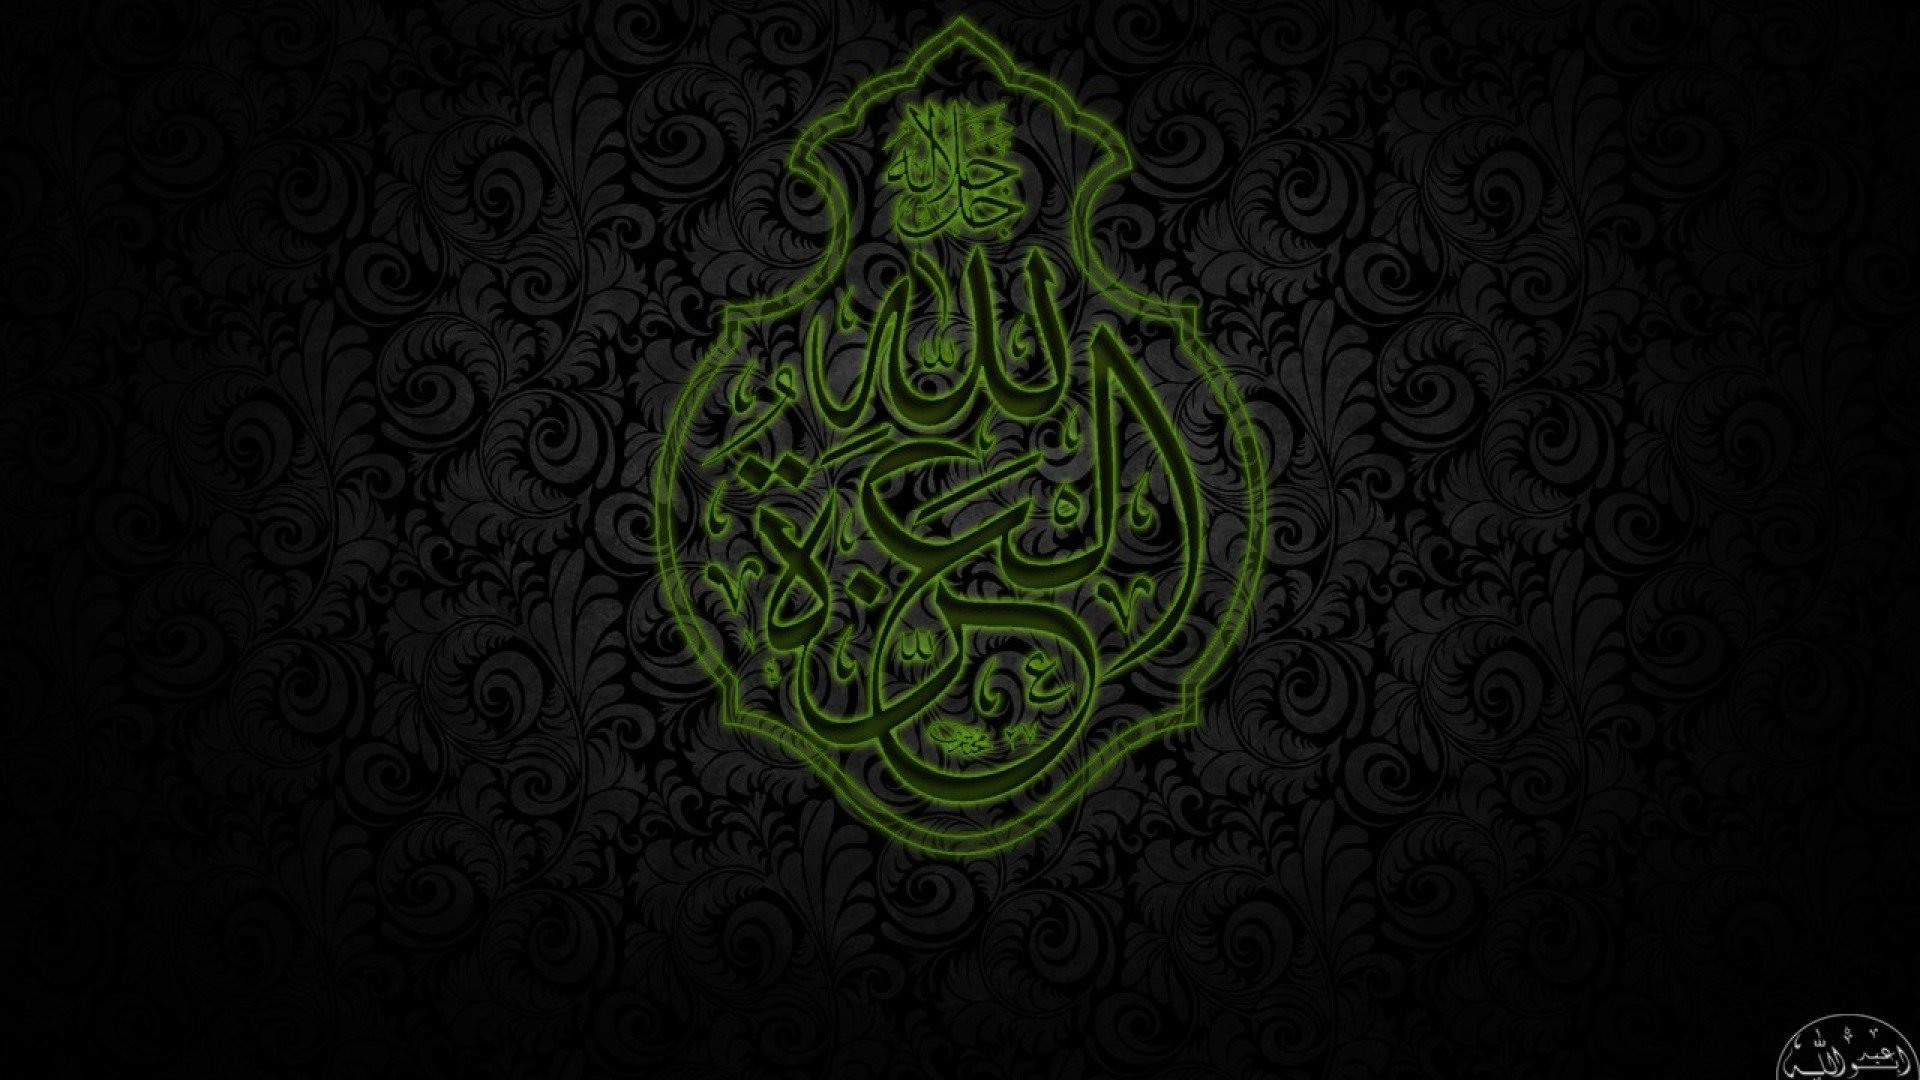 [50+] Full HD Islamic Wallpapers 1920x1080 on WallpaperSafari